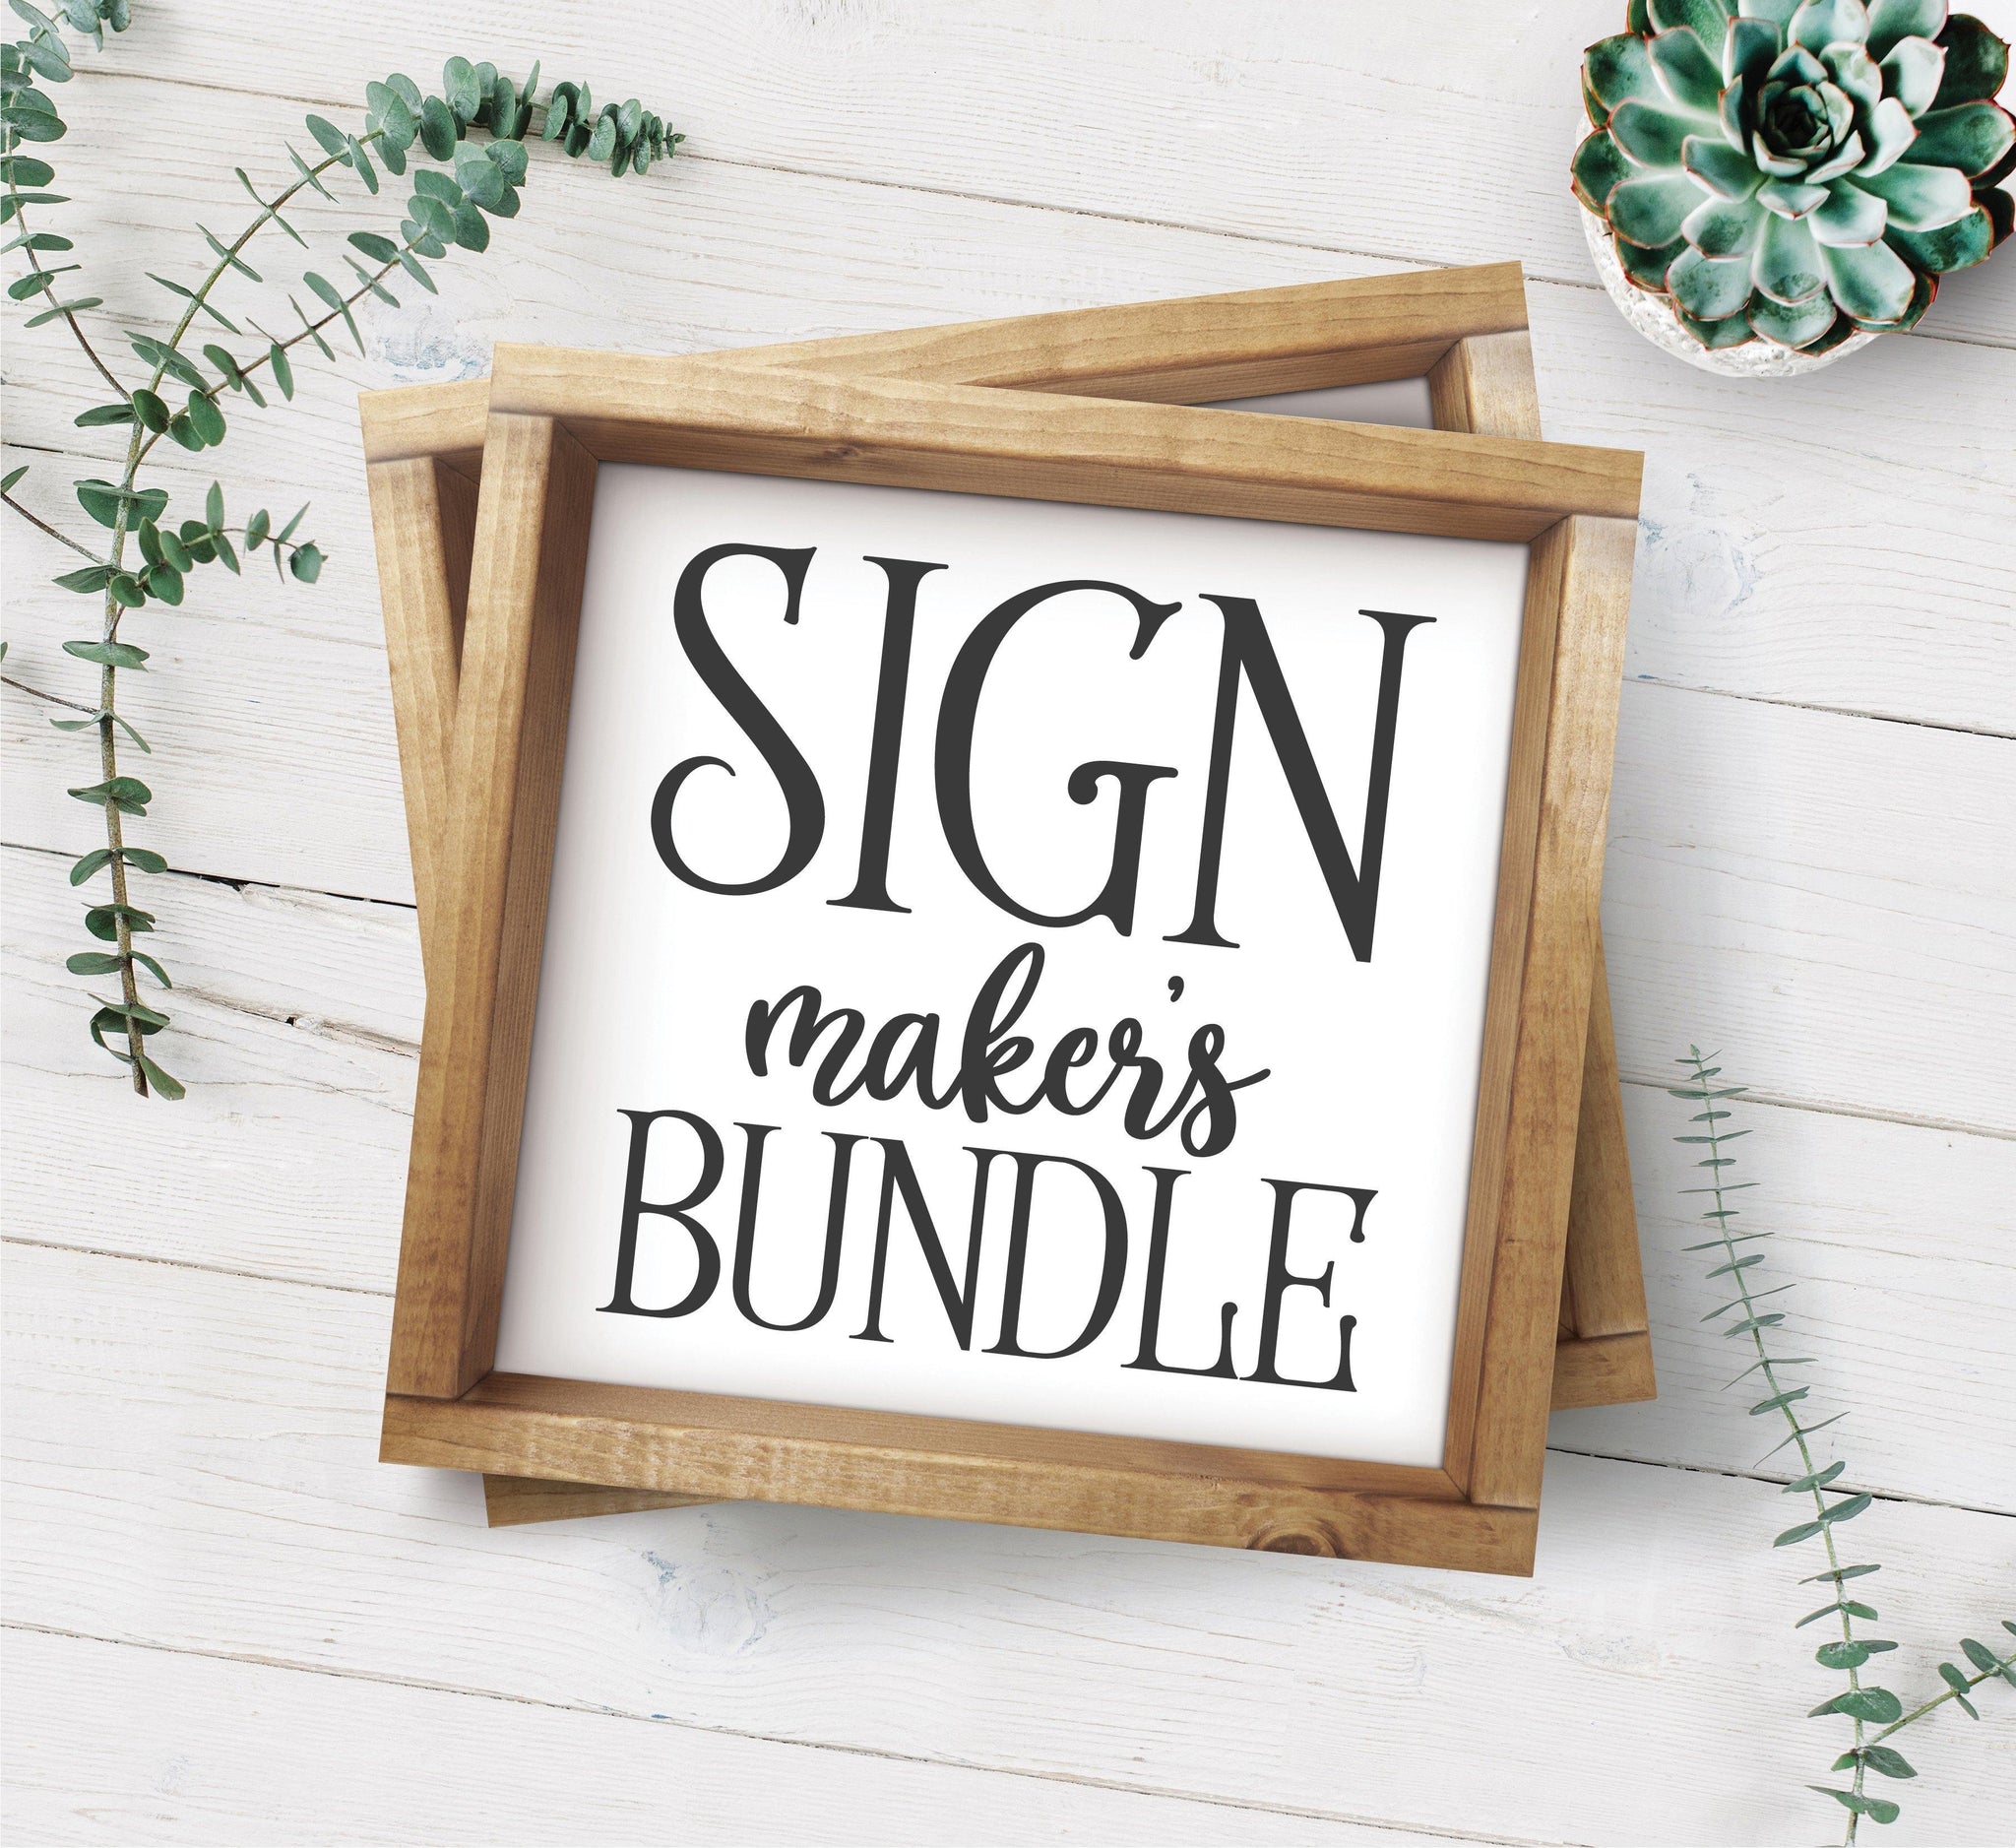 Download The Giant Sign Maker S Svg Bundle Board Batten Design Co